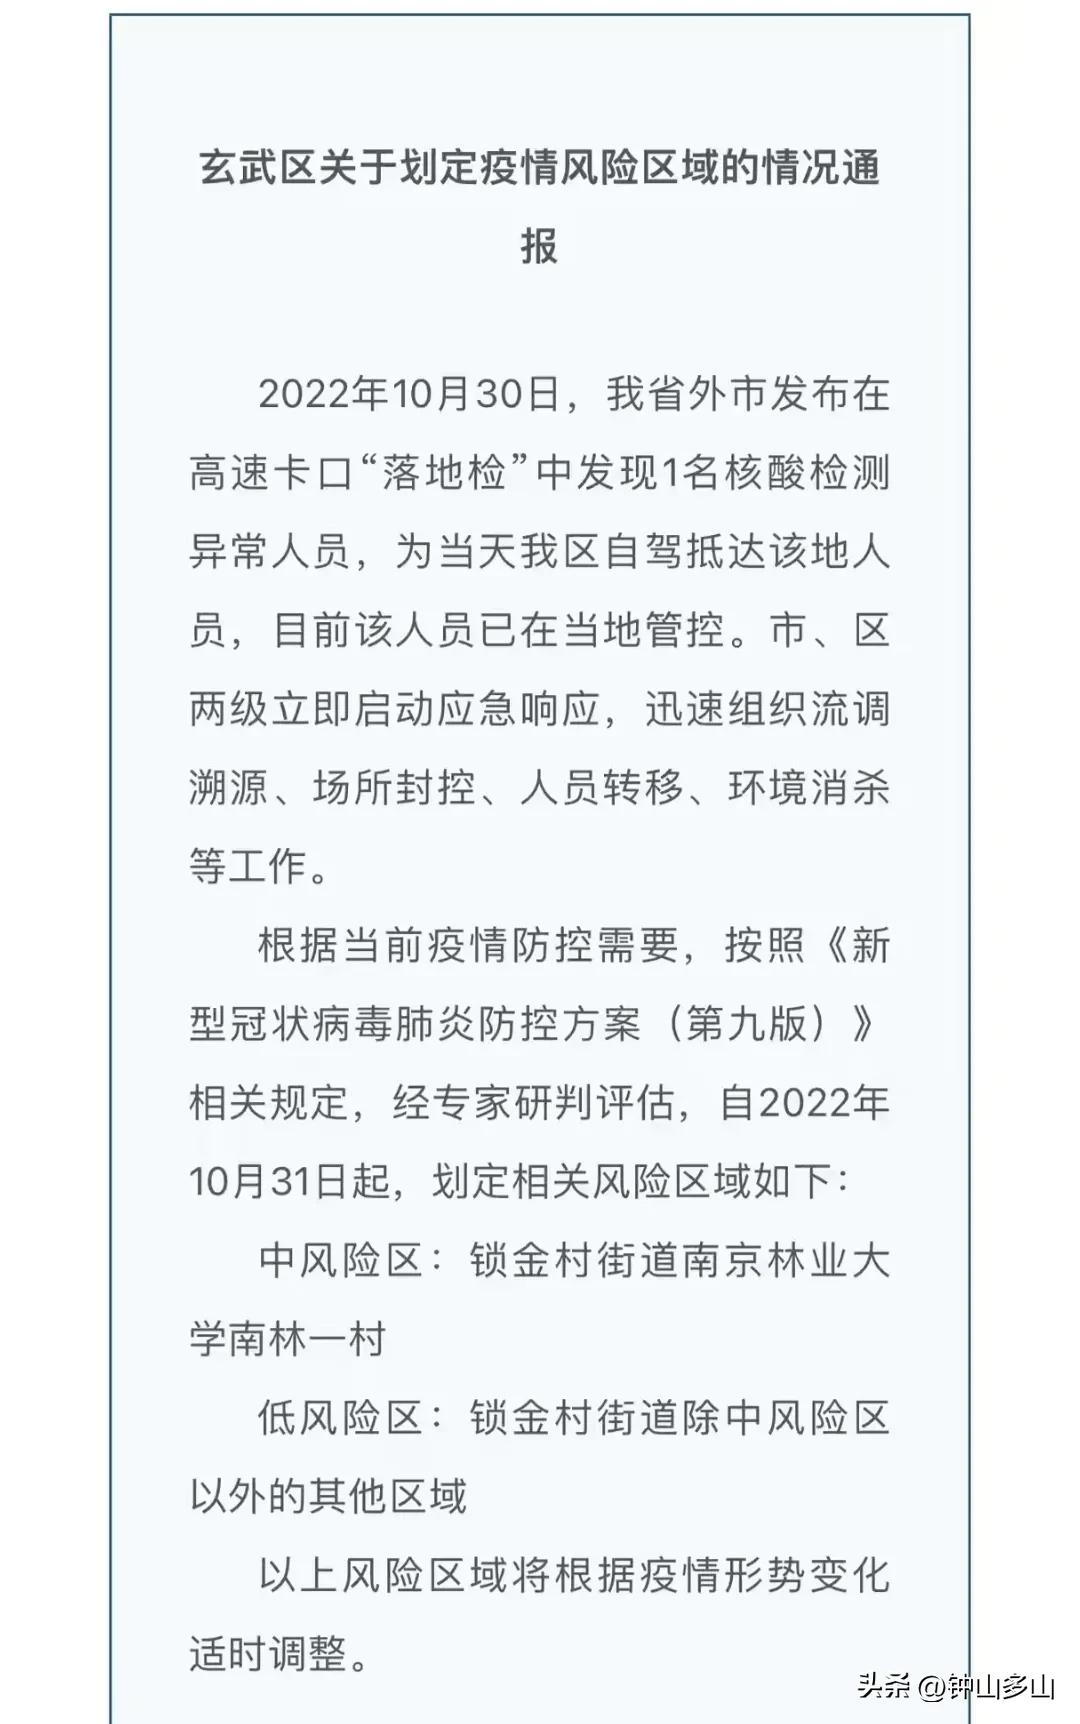 据官方发布的南京疫情公告，玄武区又爆了一颗雷，南京林业大学南林一